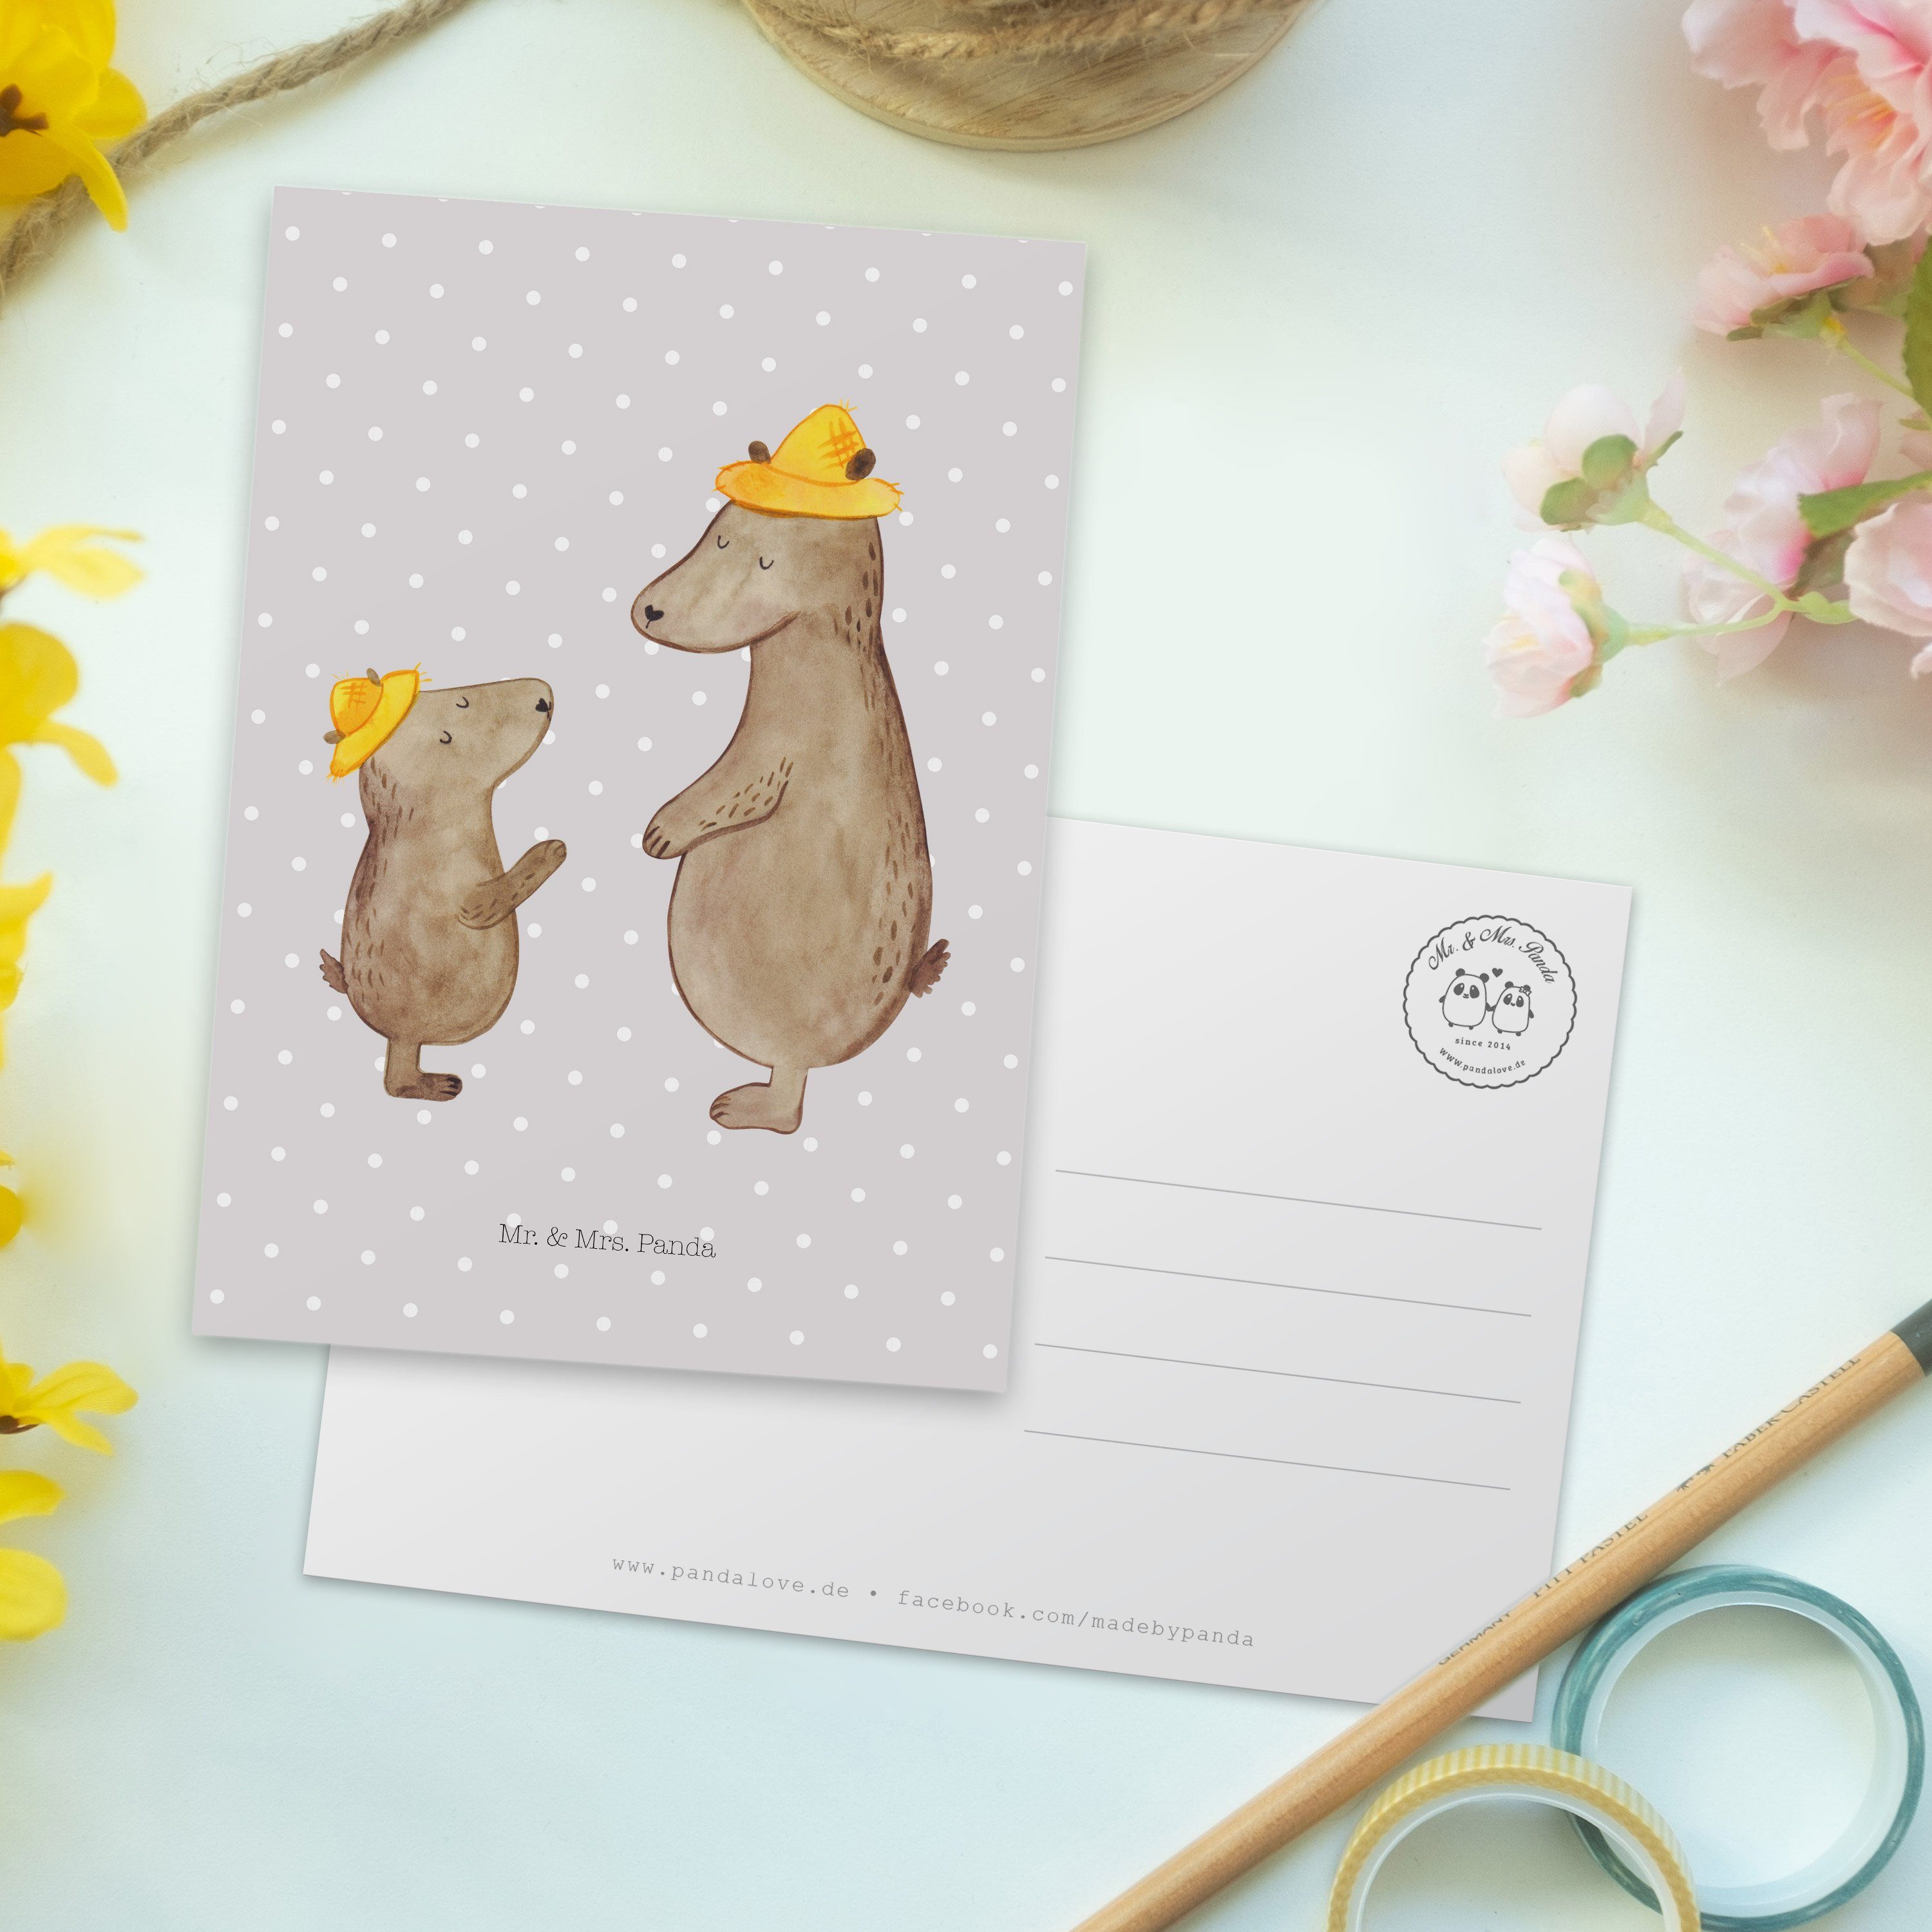 Mr. & Mrs. Panda - Pastell Hut Papi, Geschenk, Dad, Grau Postkarte mit Vatertag, Bären - Karte